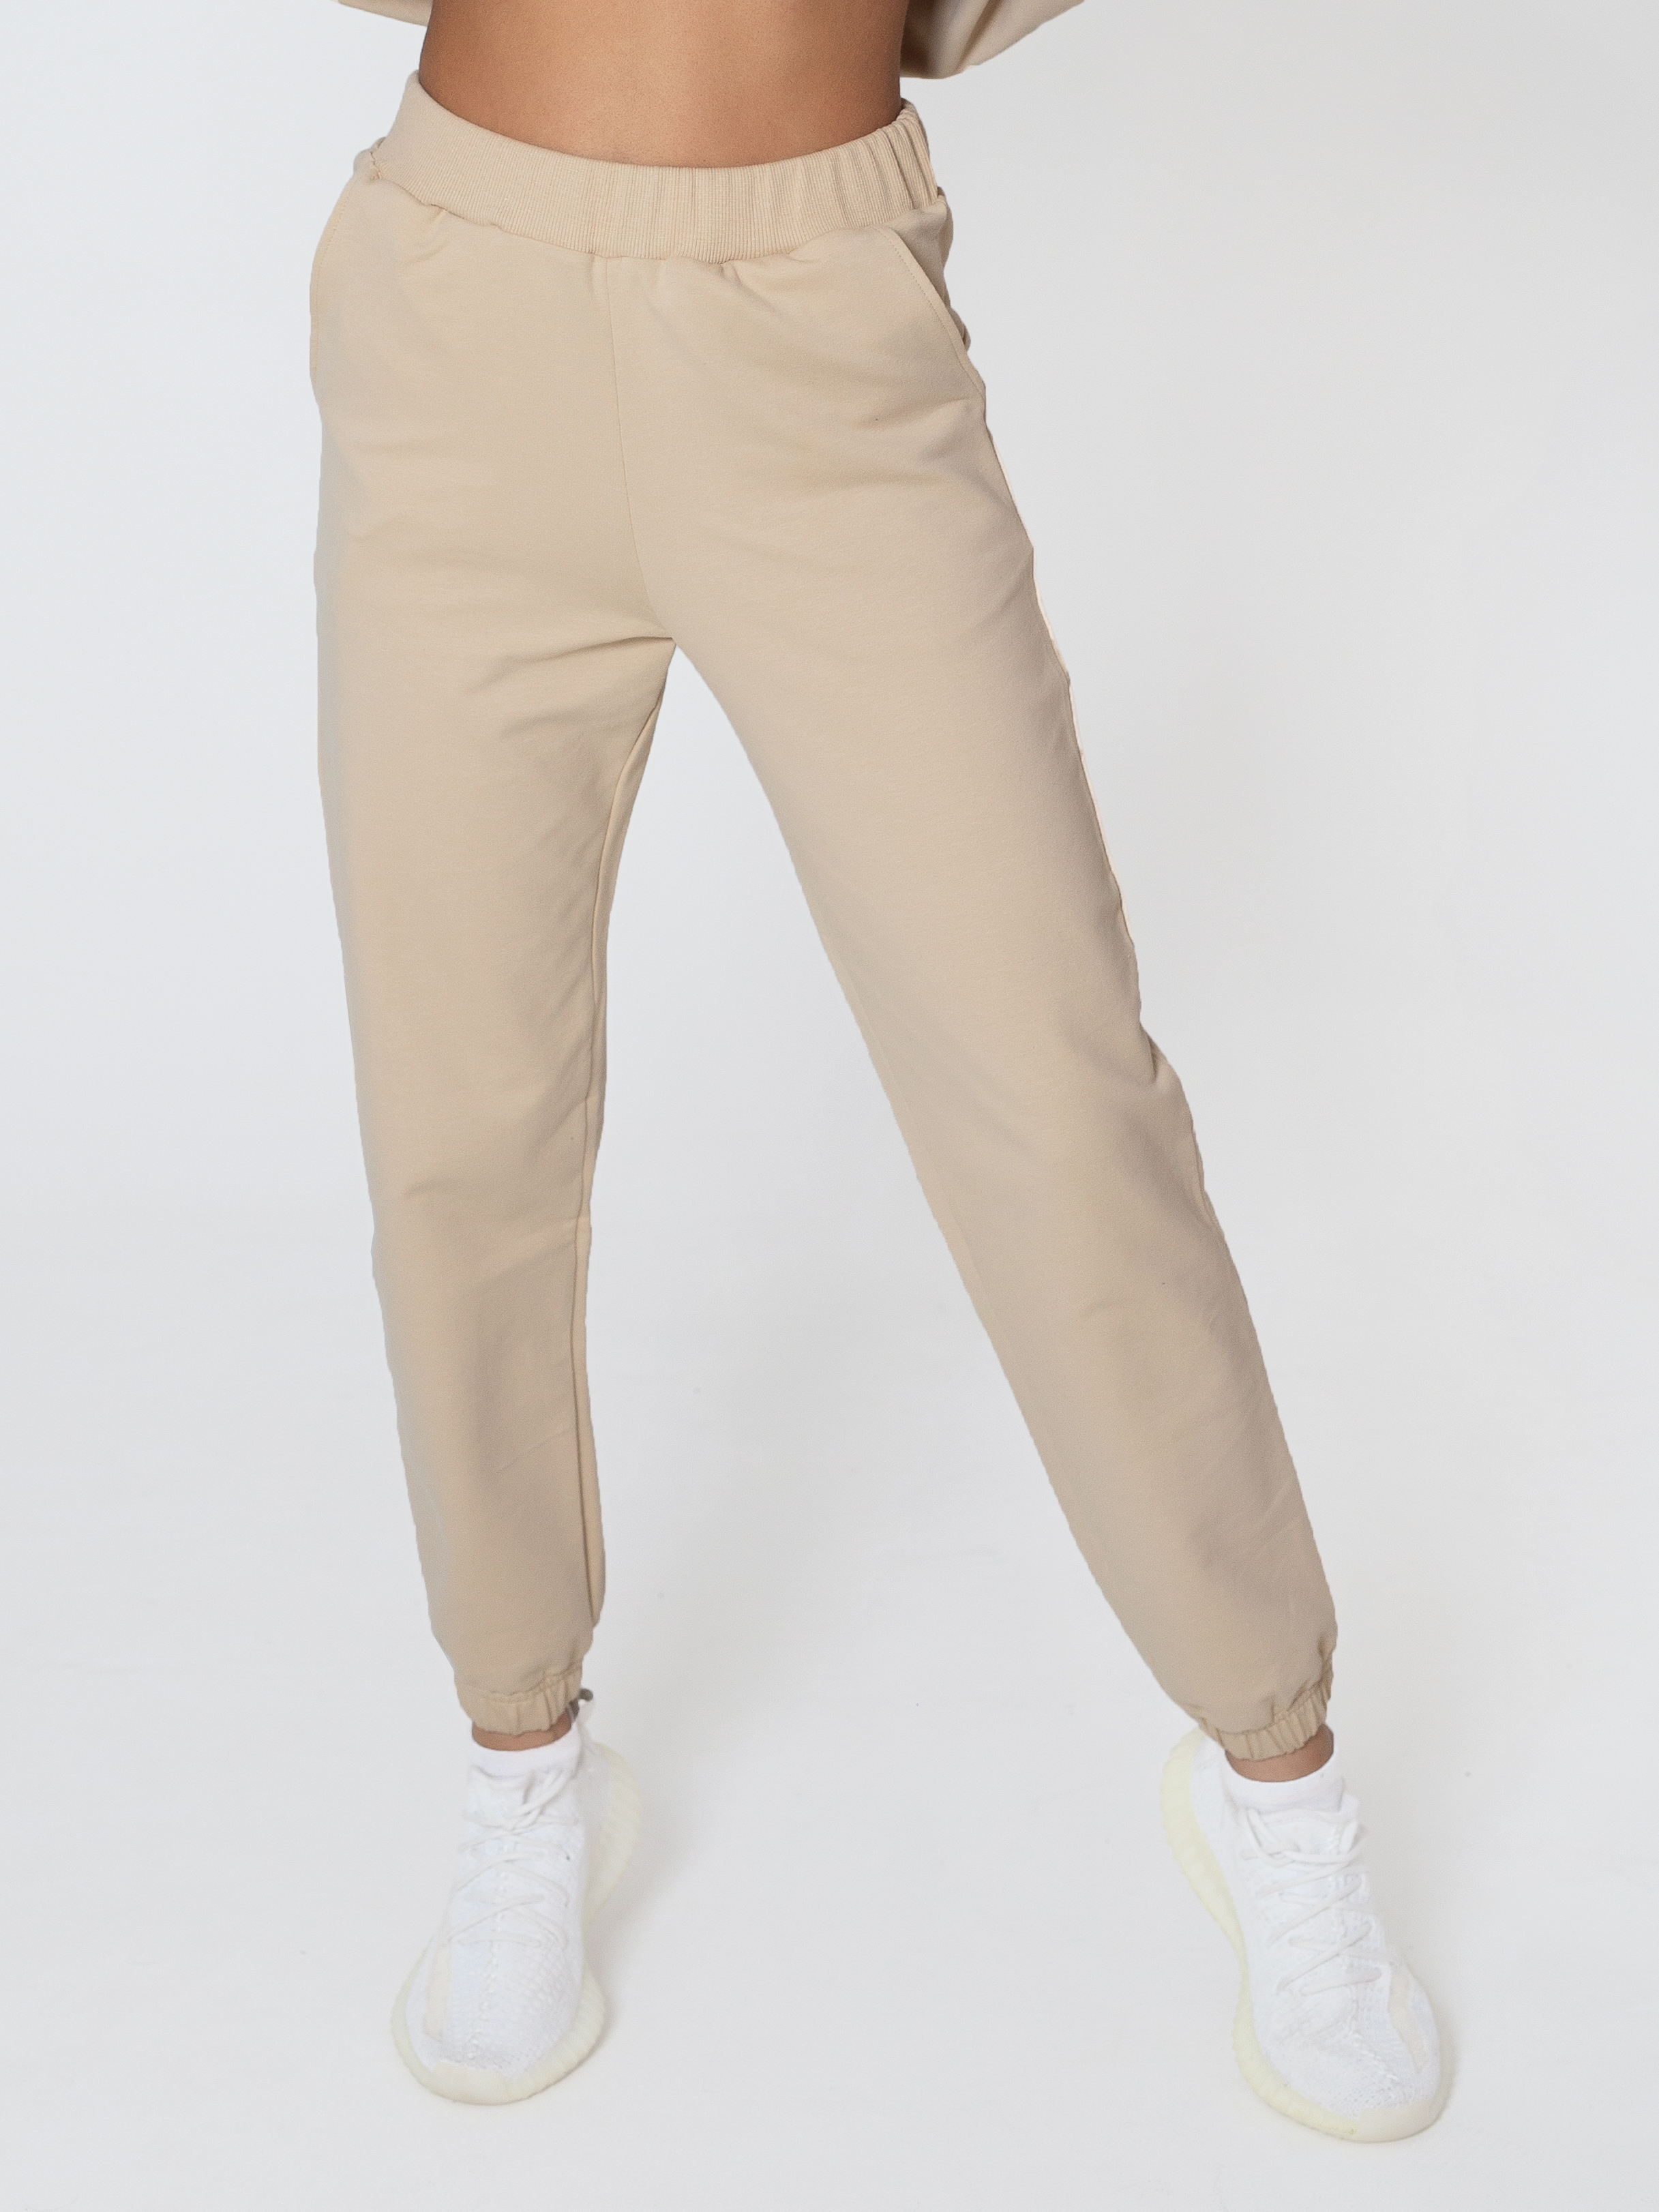 Спортивные брюки женские Павлинка Взрослый беж бежевые 48-50 RU